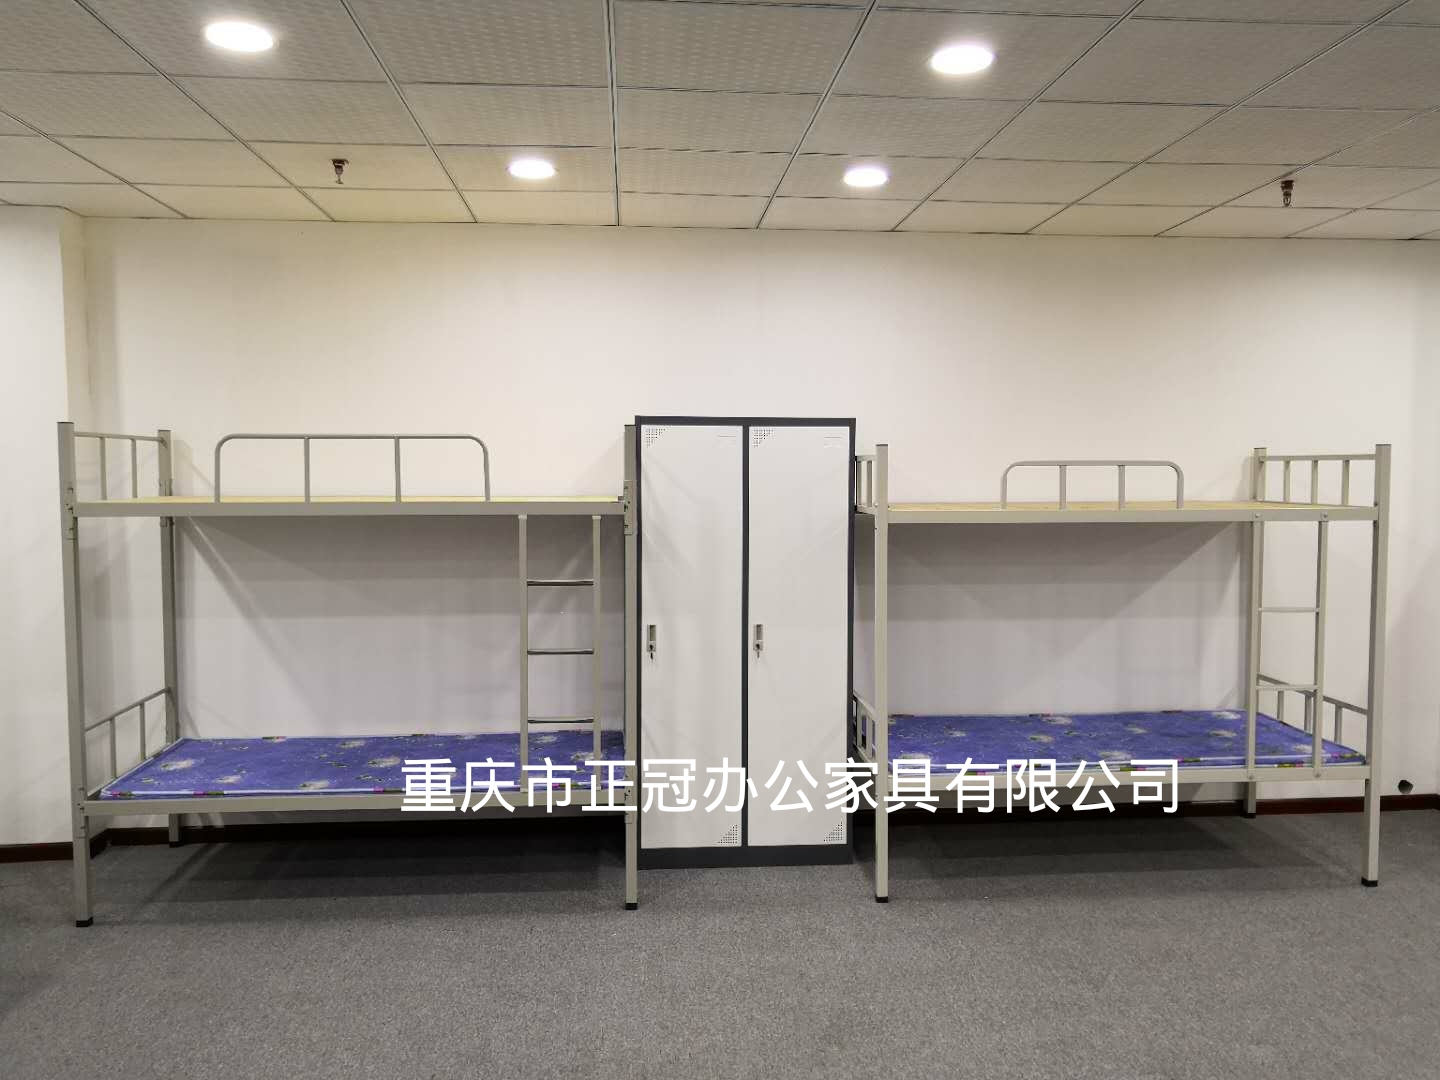 重庆宿舍钢架床系列